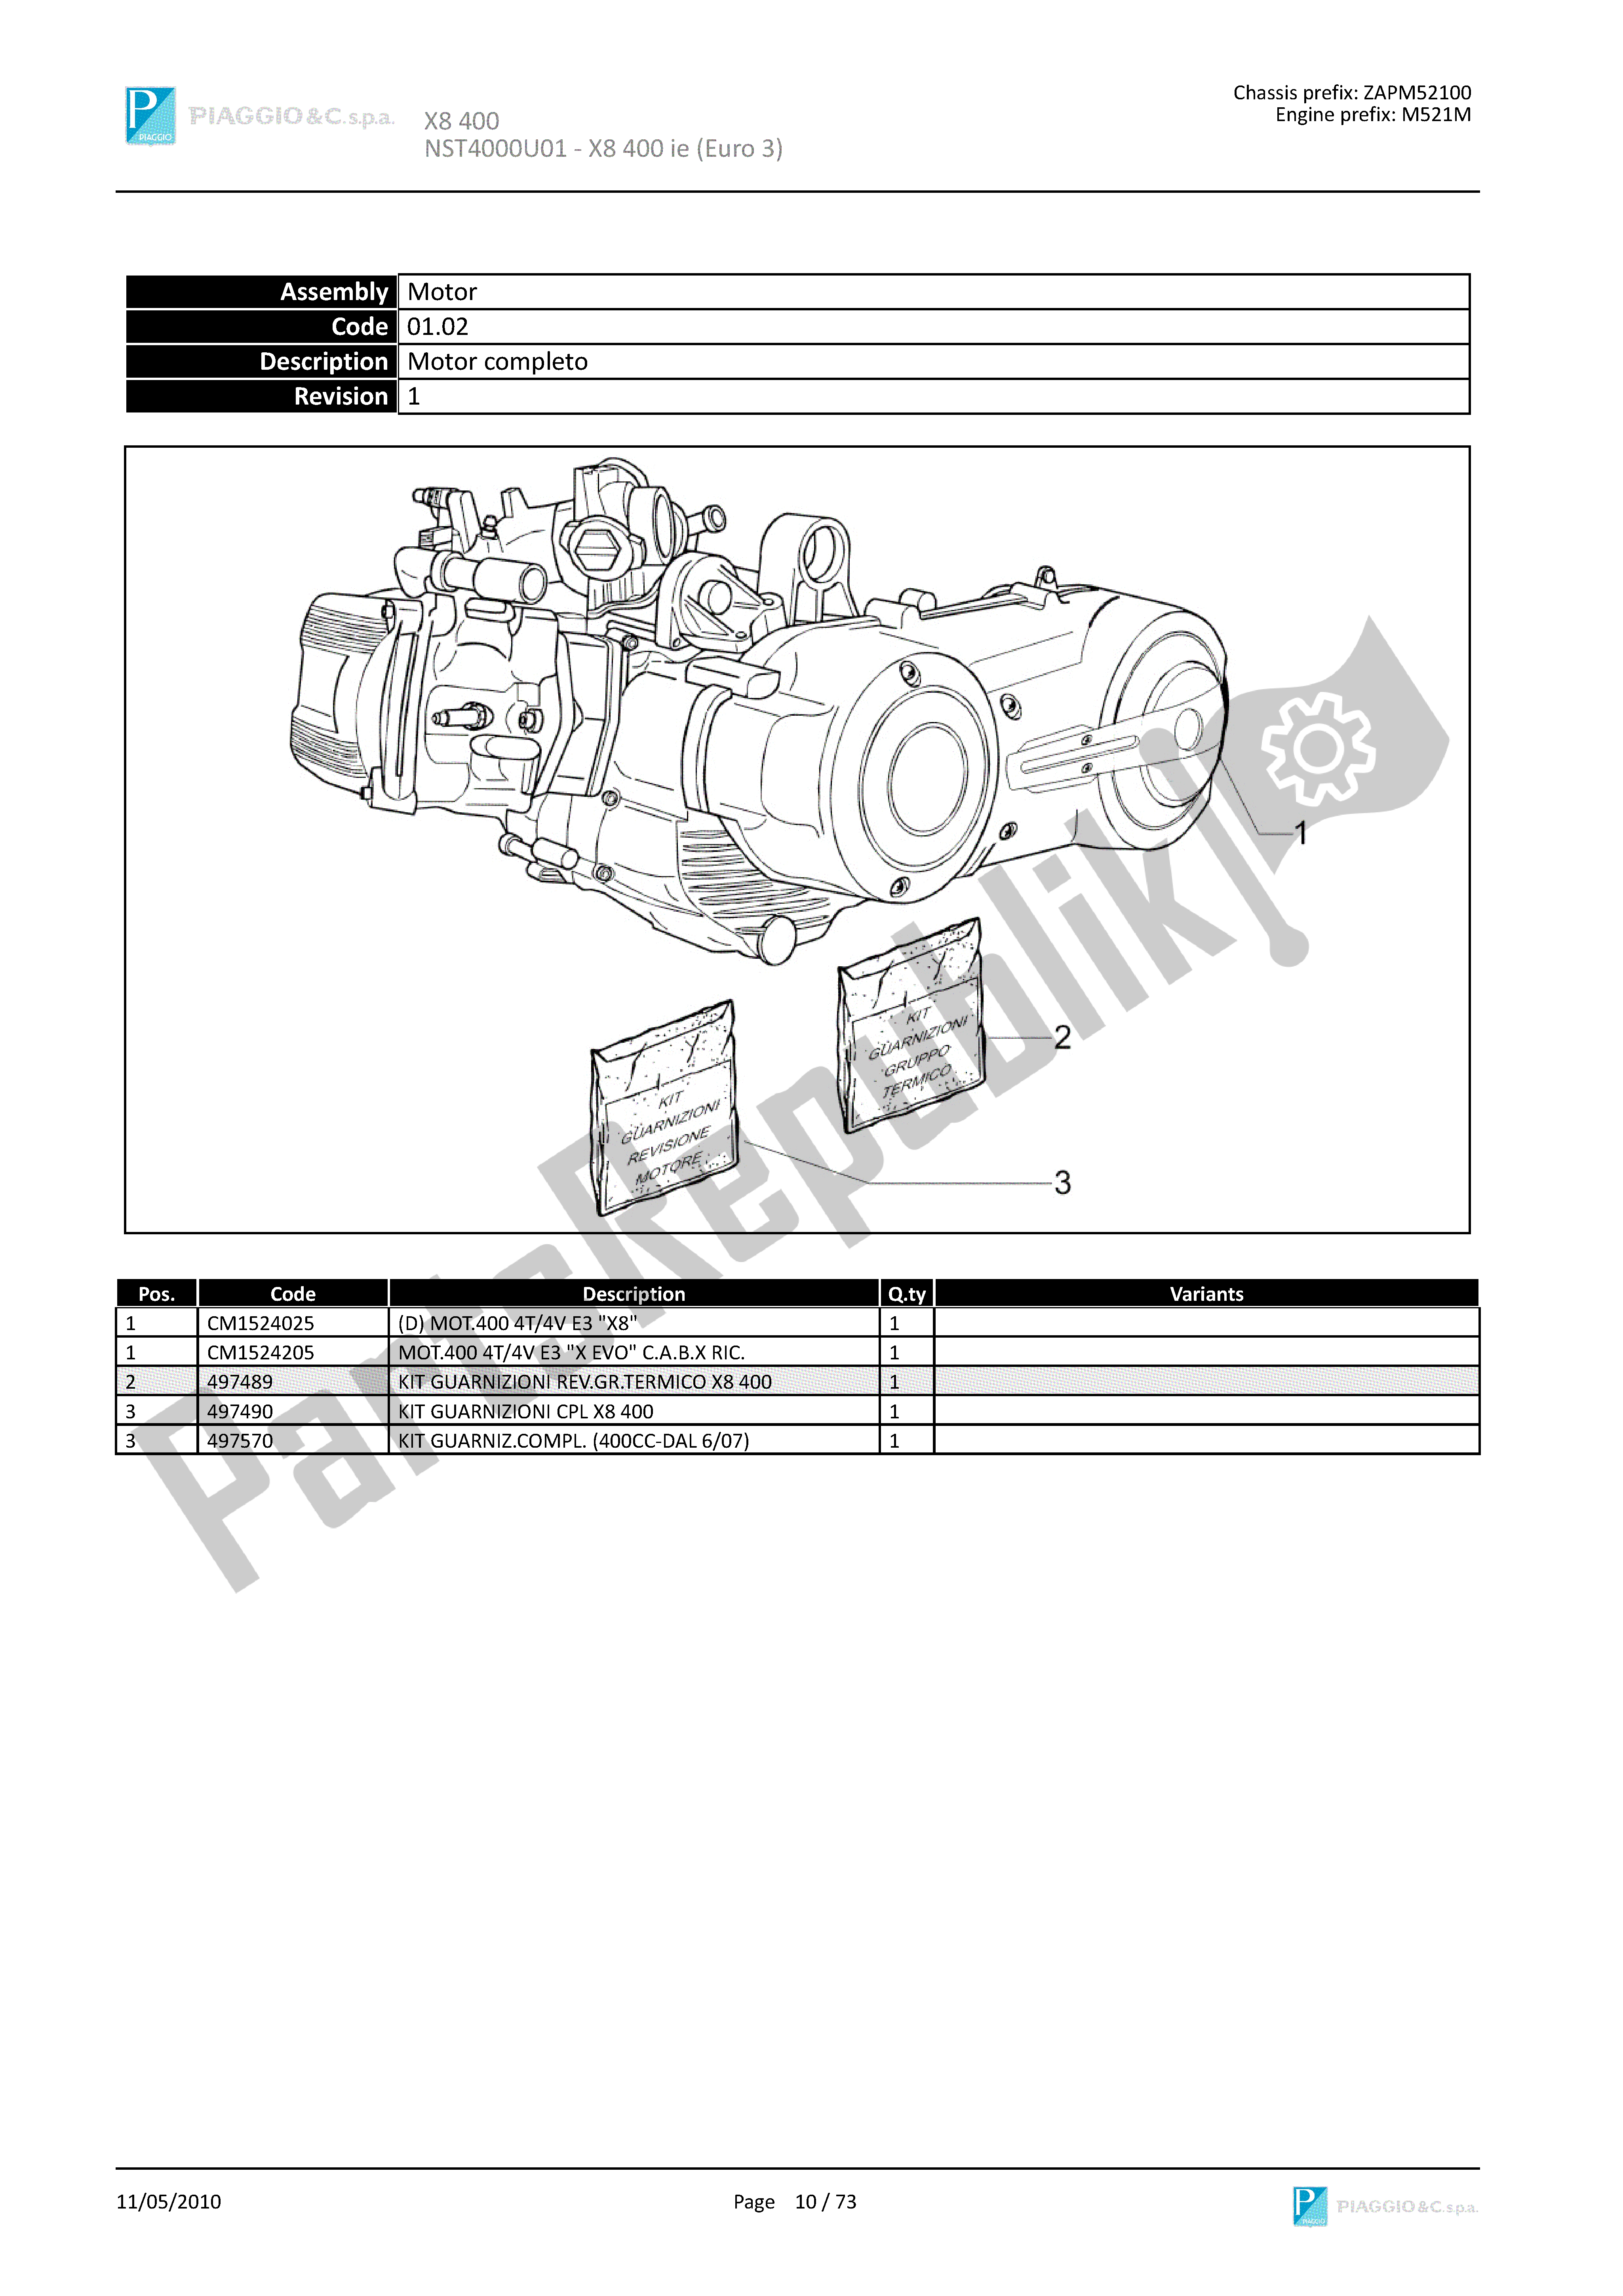 Todas las partes para Motor Completo de Piaggio X8 400 2005 - 2008